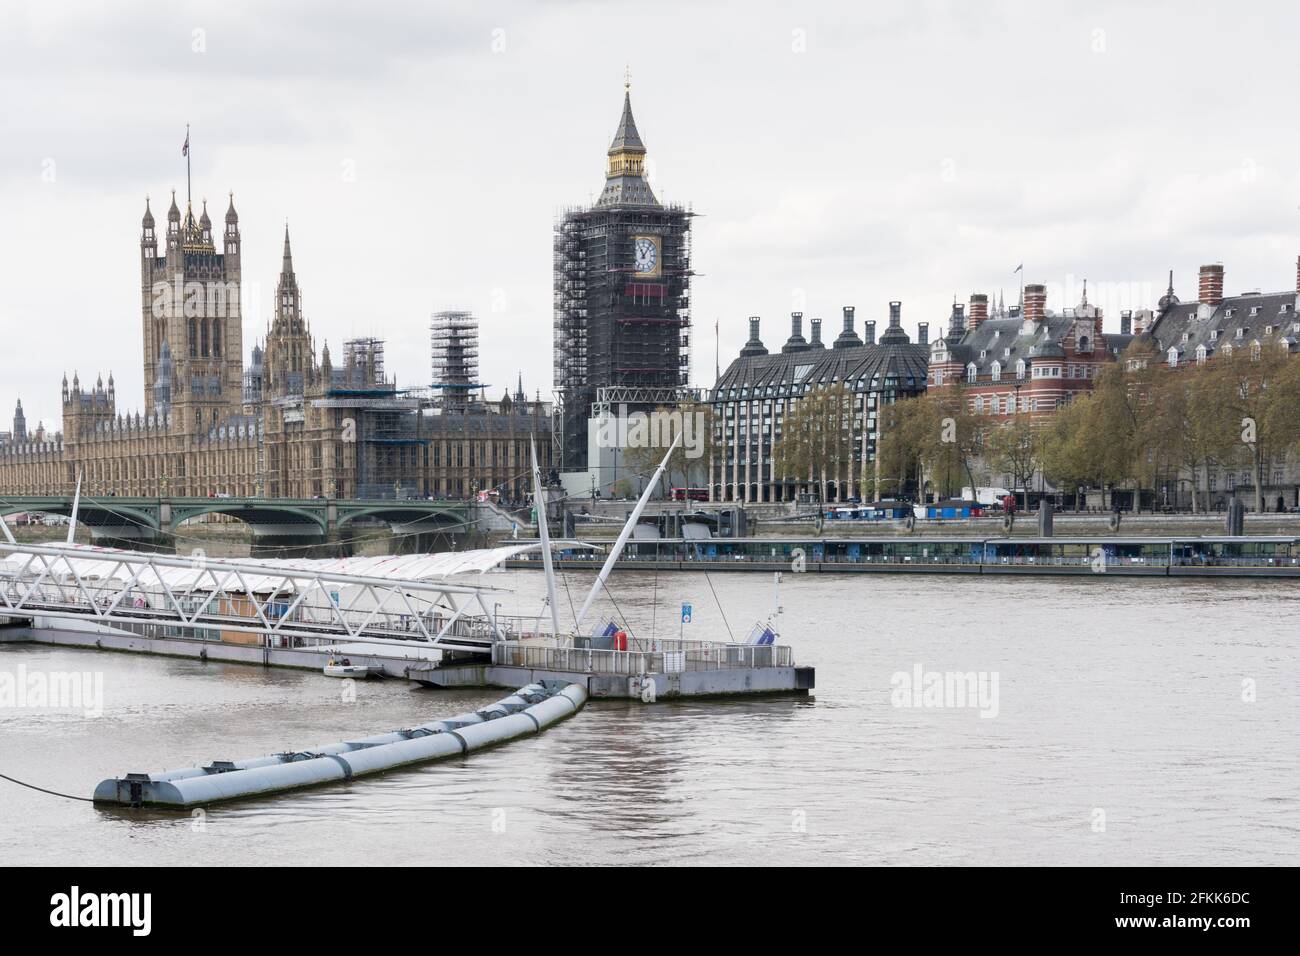 Un impalcato rivestito Big ben e Houses of Parliament visto dalla London Eye Ferris Wheel, Southbank, Londra, Inghilterra, Regno Unito Foto Stock